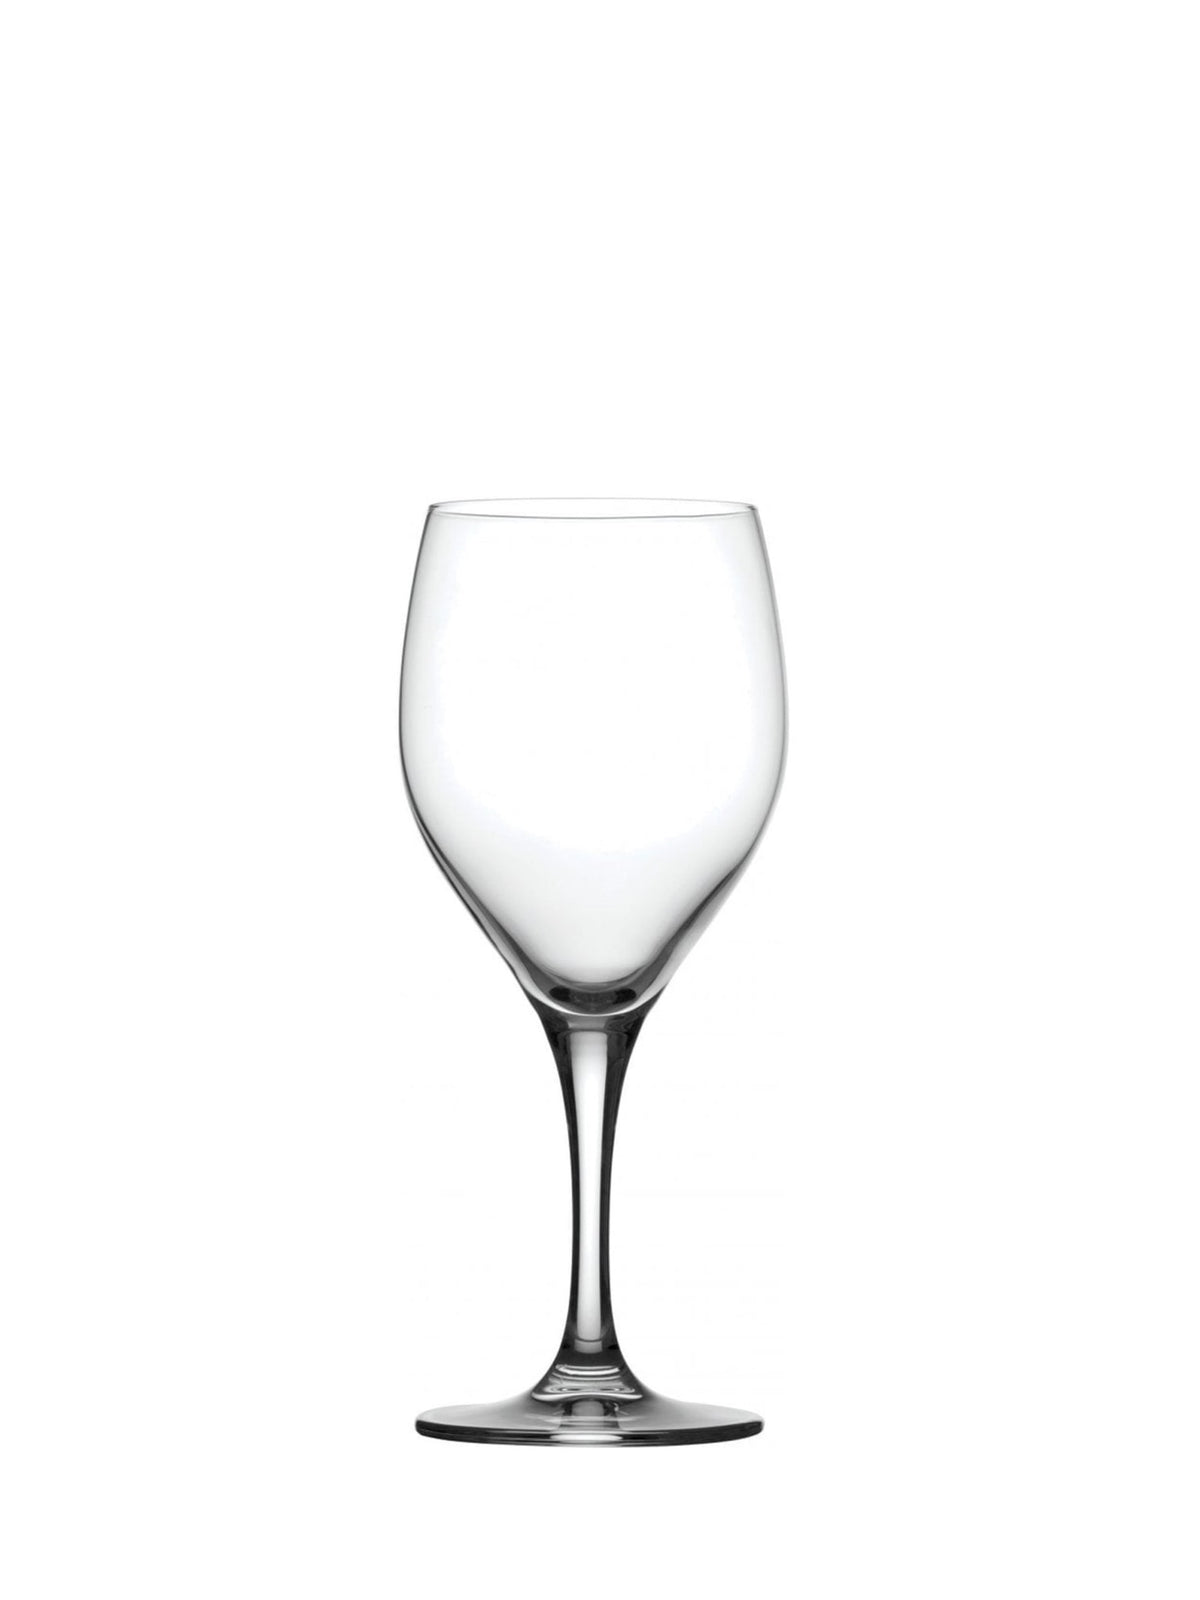 Primeur All-Purpose Wine Glas (42,5 cl) - et alsidigt og elegant glas til servering af forskellige typer vin